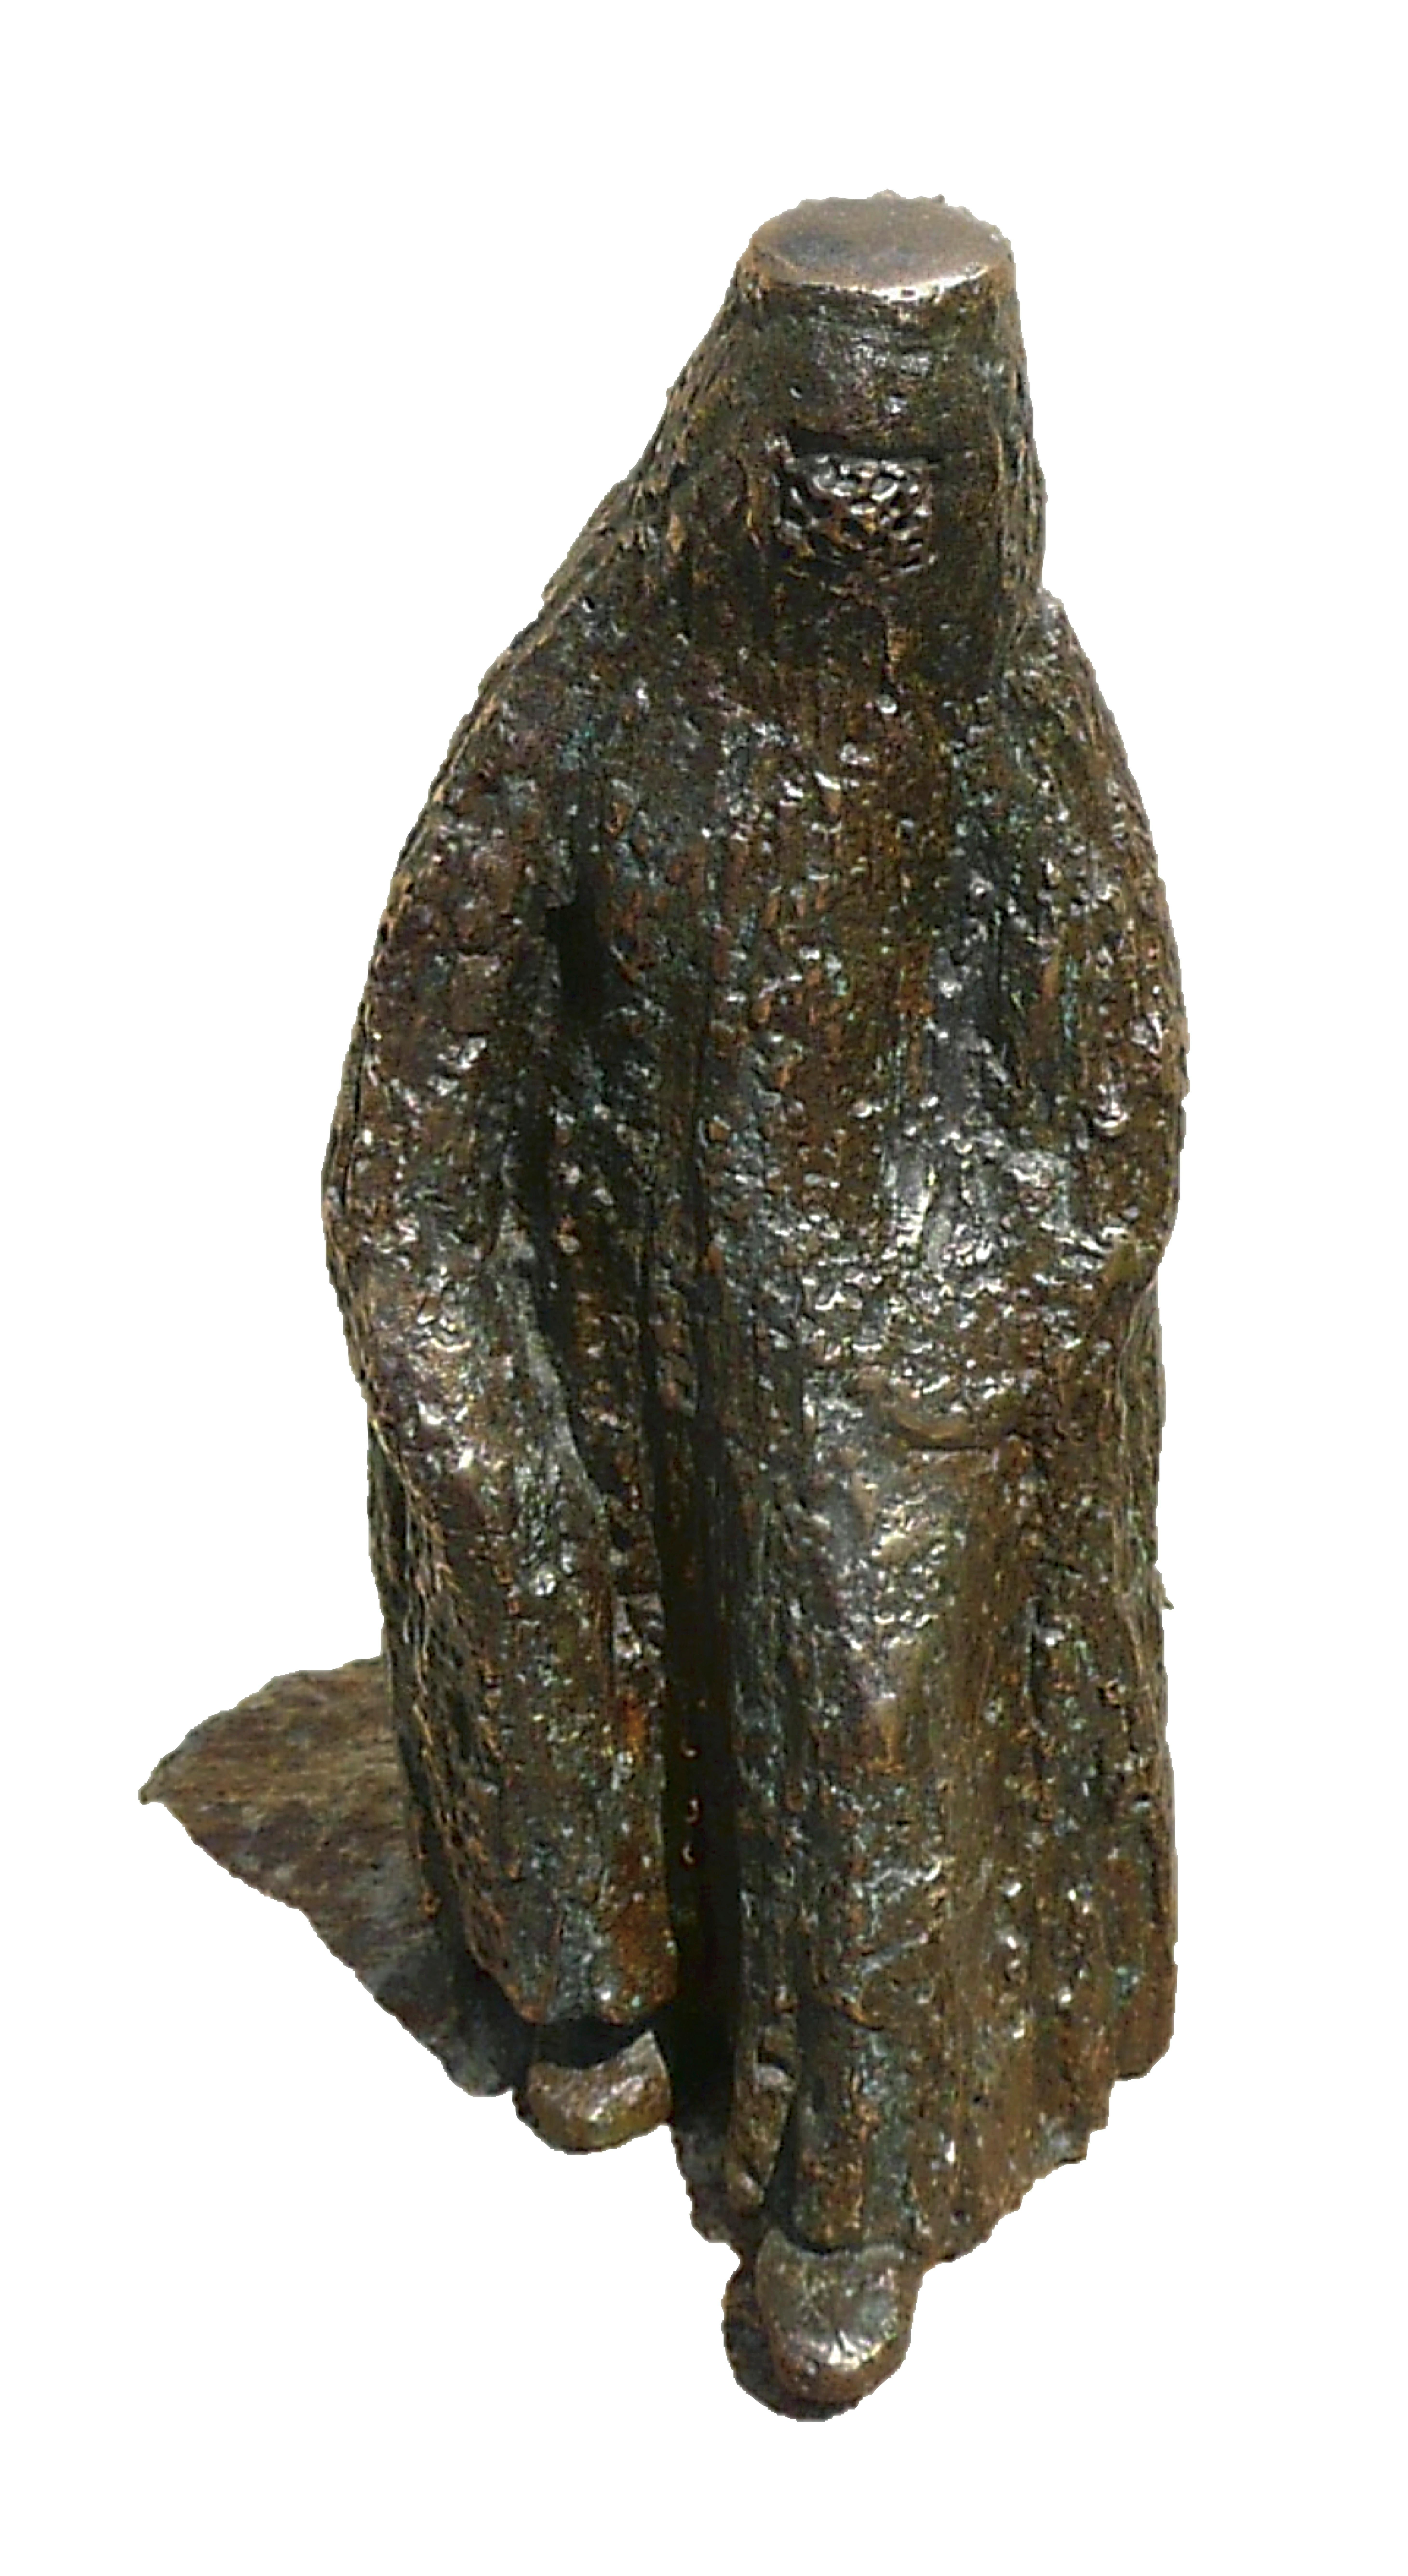 Emmanuelle Vroelant Figurative Sculpture - "Afghane" bronze figurative sculpture numbered from 2 to 8 19x9x7cm 2009